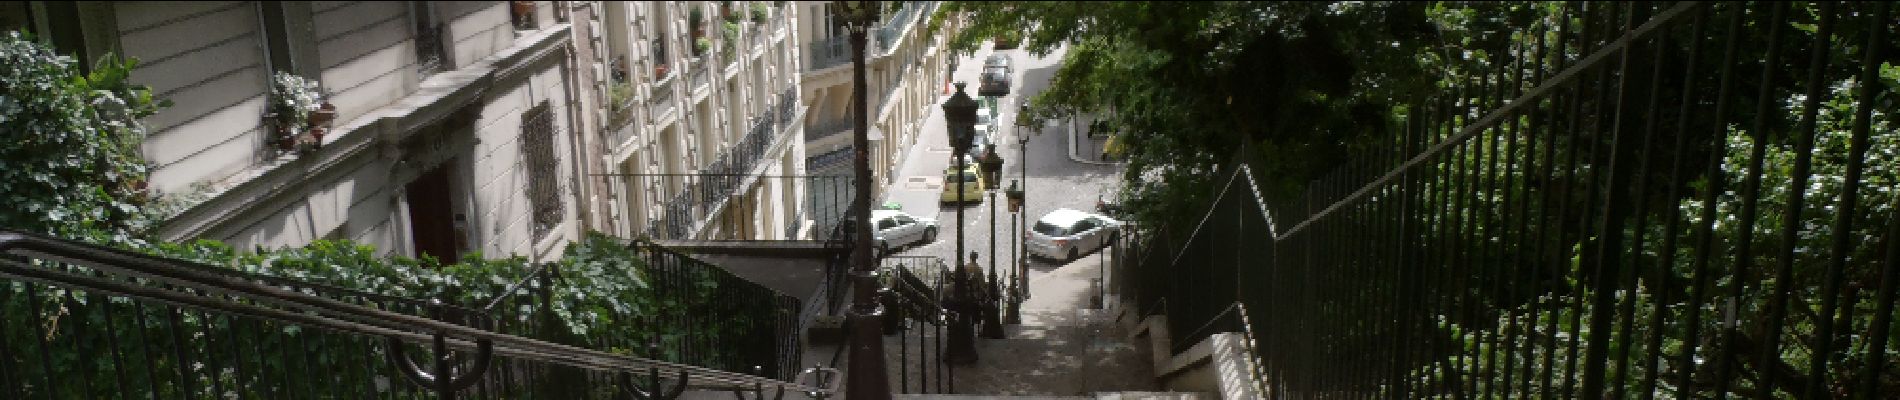 POI Parijs - Escaliers - Photo